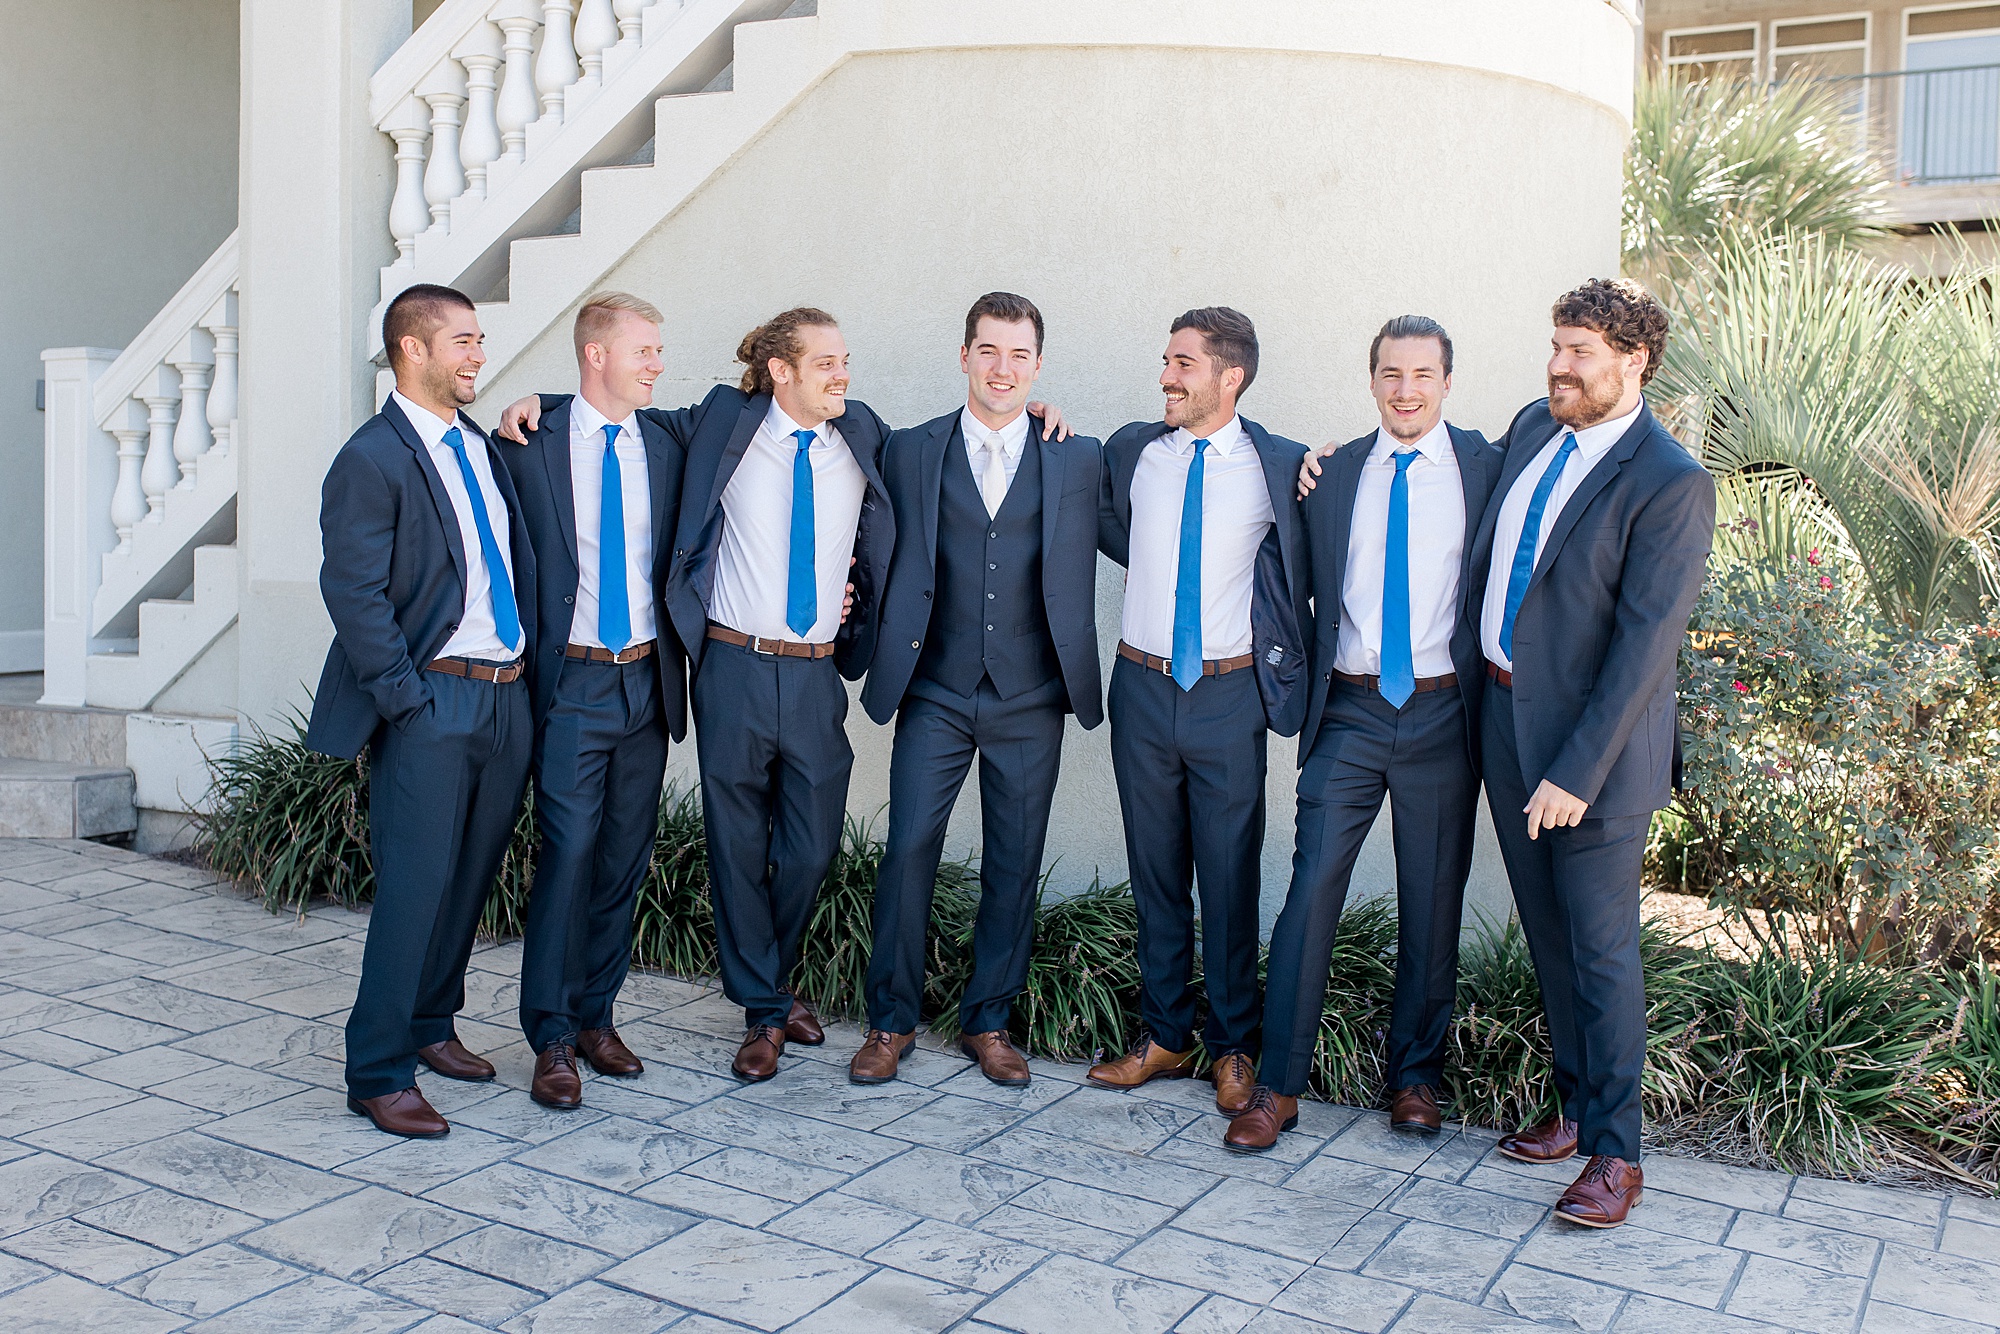 South Carolina wedding photographer captures groomsmen at NC wedding